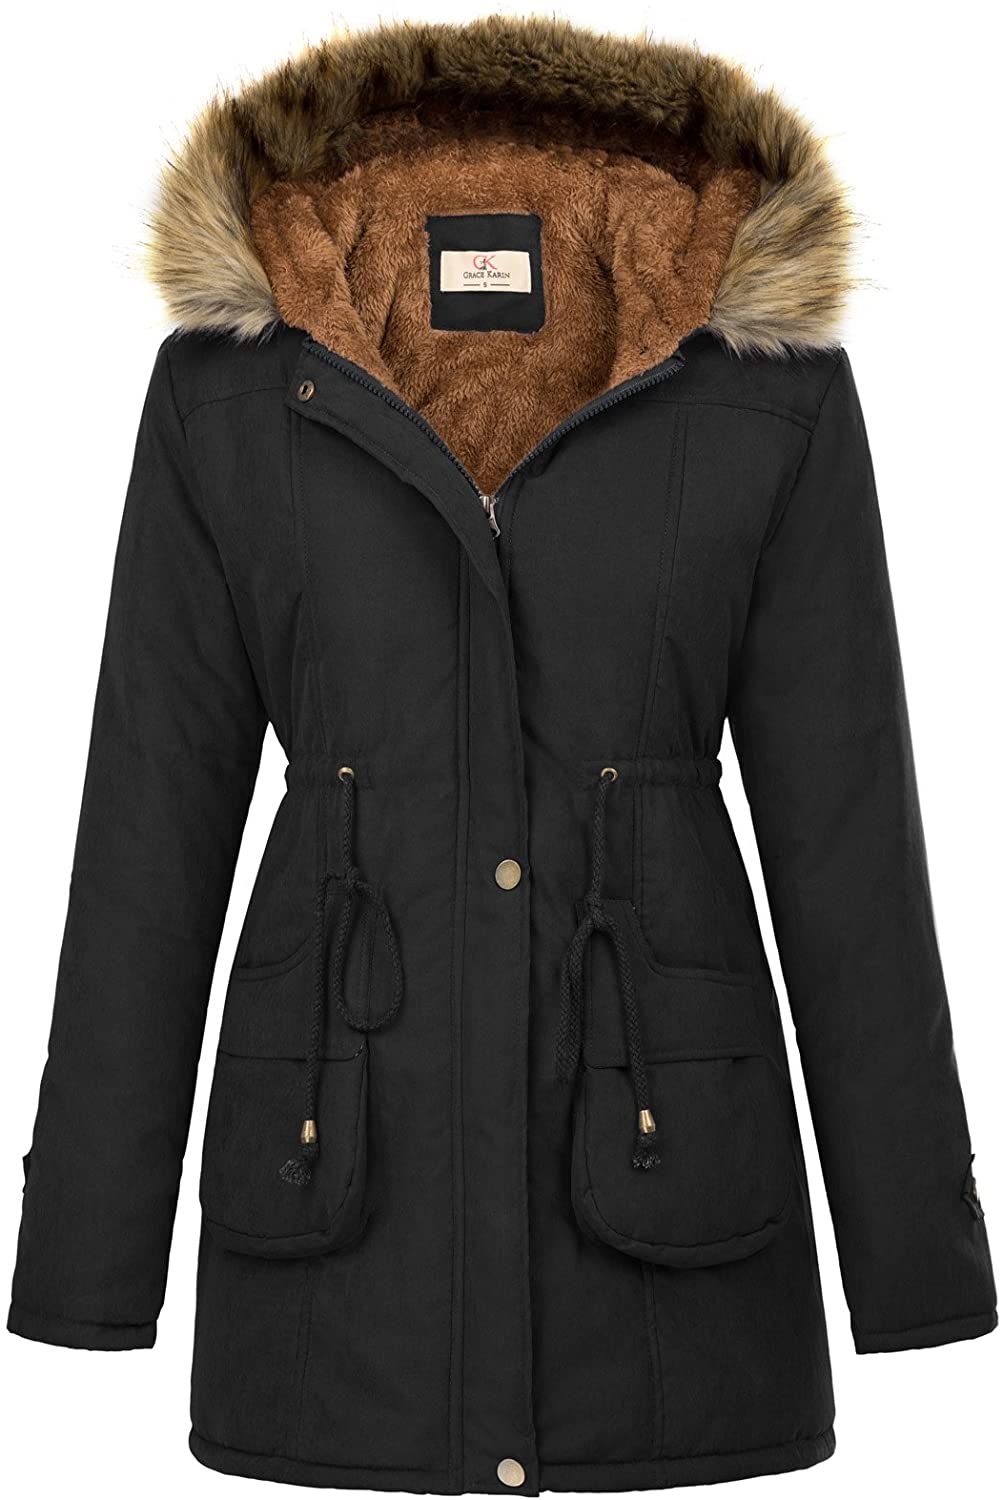 Beyove Womens Winter Warm Coat Hooded Parkas Overcoat Fleece Outwear Jacket with Drawstring 